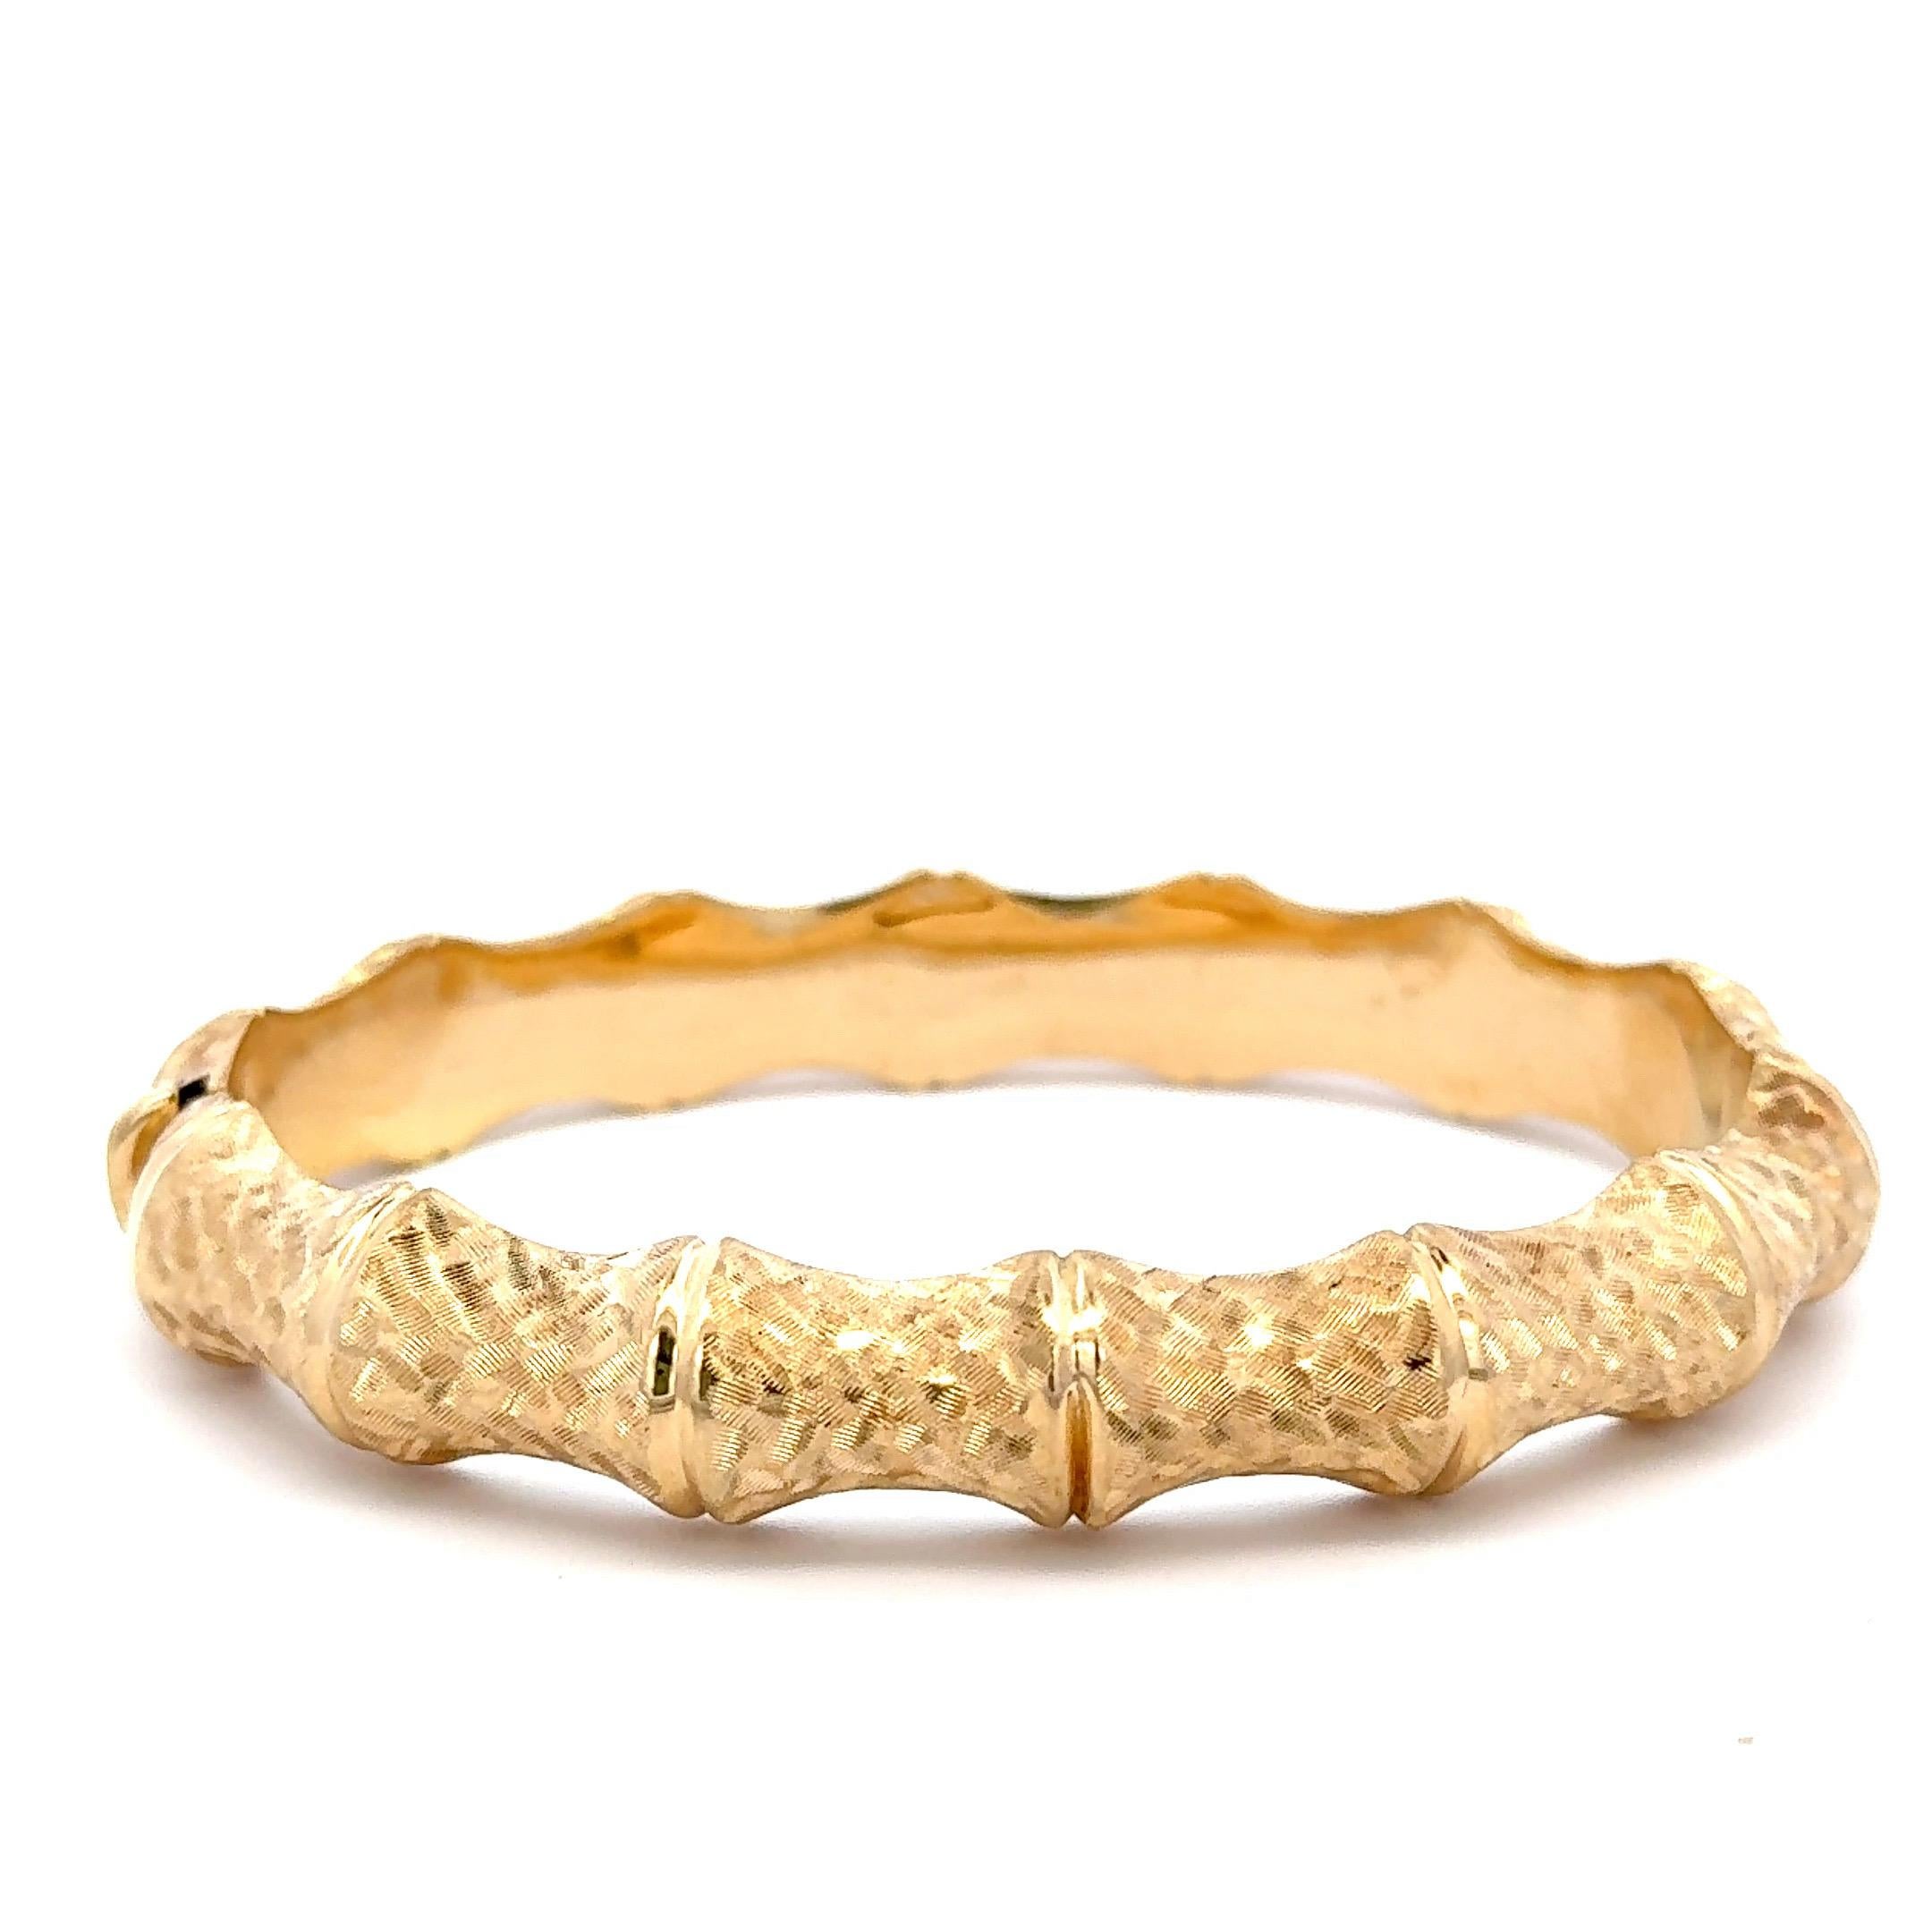 Fabriqué en Italie, ce bracelet en or jaune 14 carats présente un motif de bambou et pèse 17,1 grammes. 
Convient à un poignet de taille standard. 